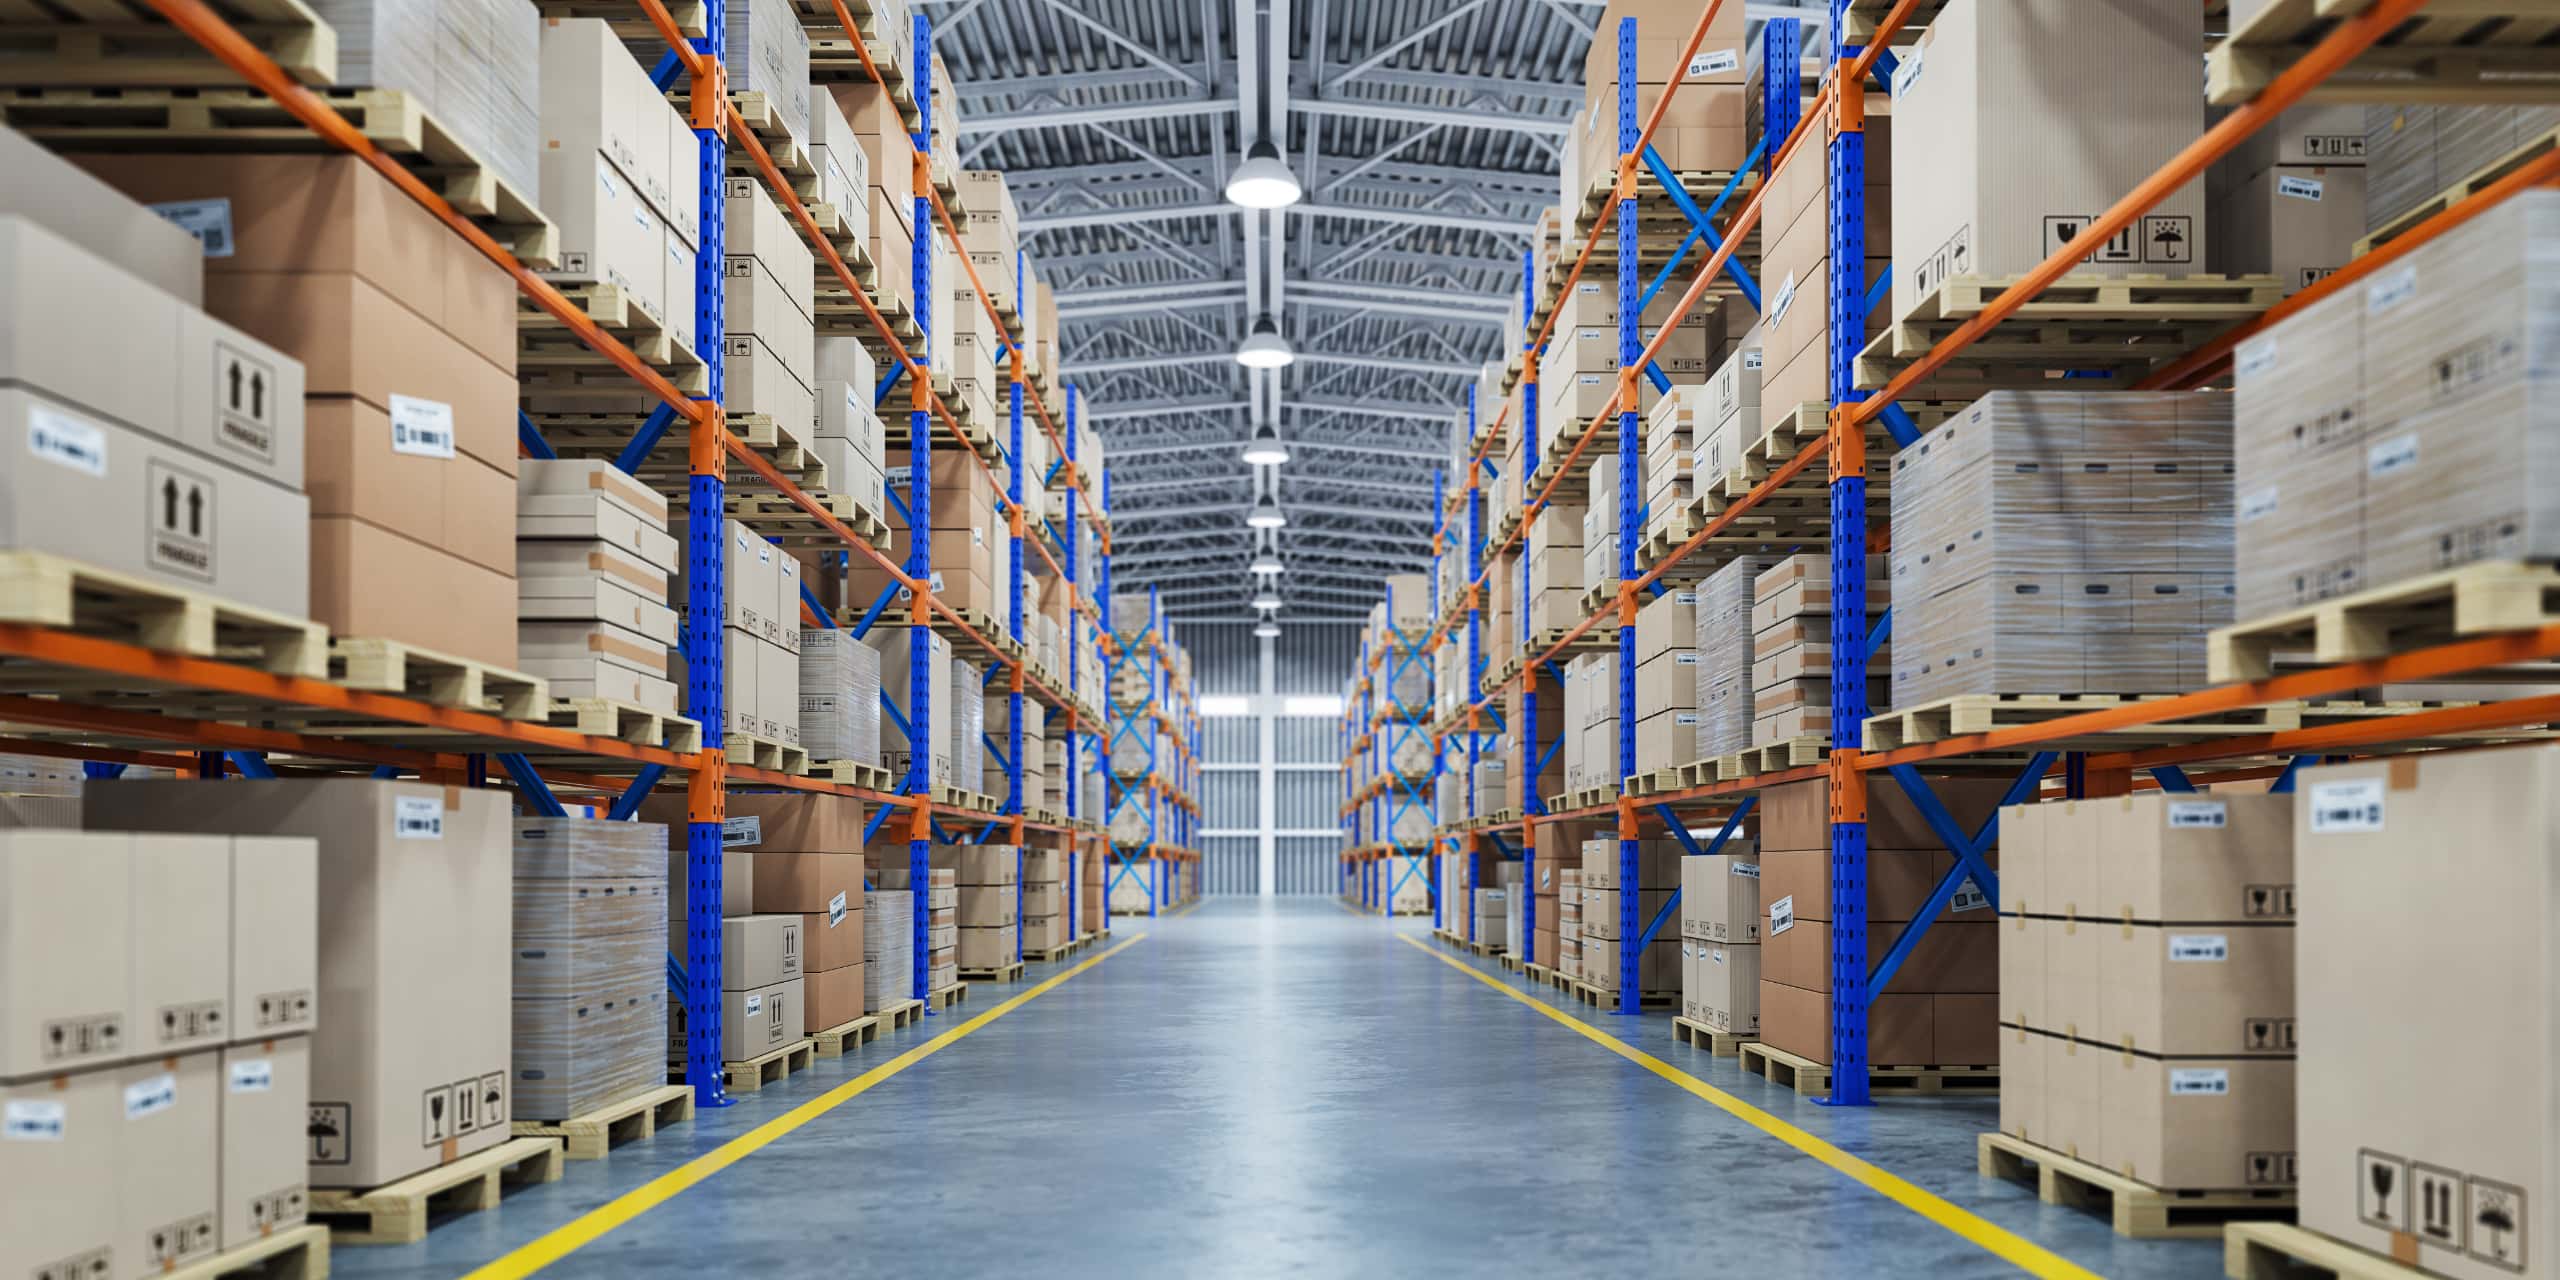 Logistiklager - Logpart levererar tredjepartslogistik till sina kunder. I bild är ett stort organiserat lager.